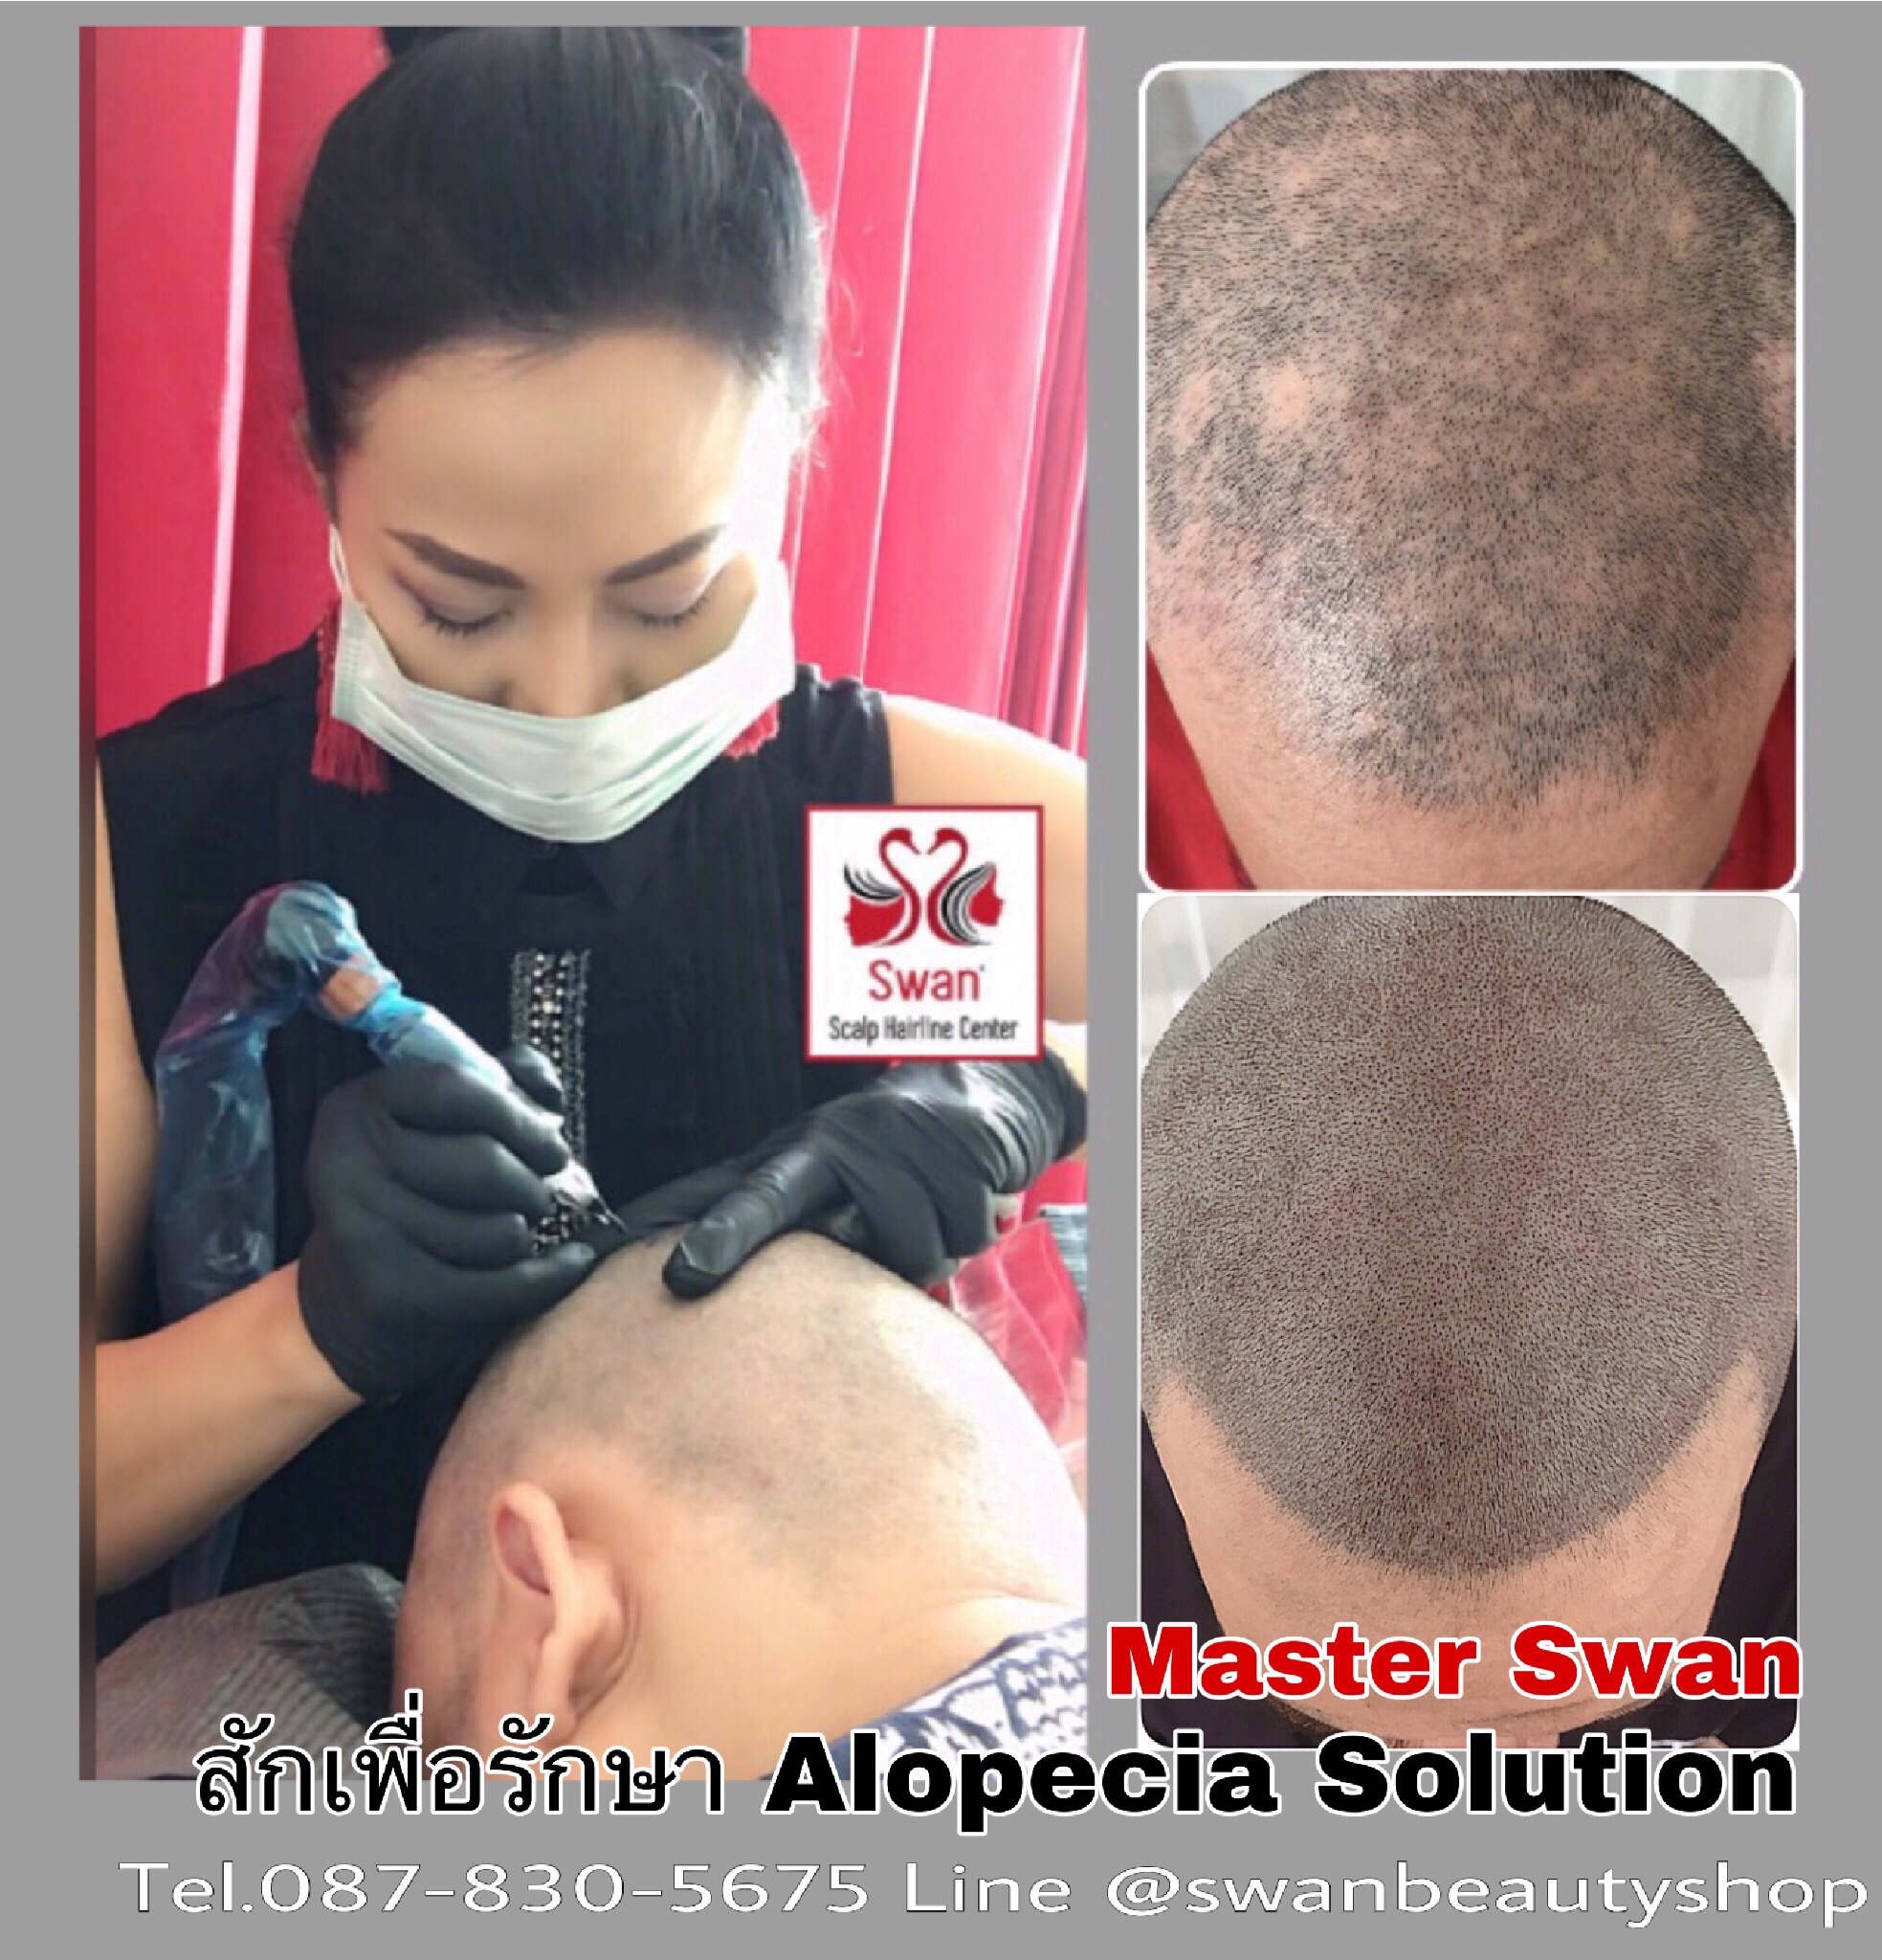 8. Alopecia Areata